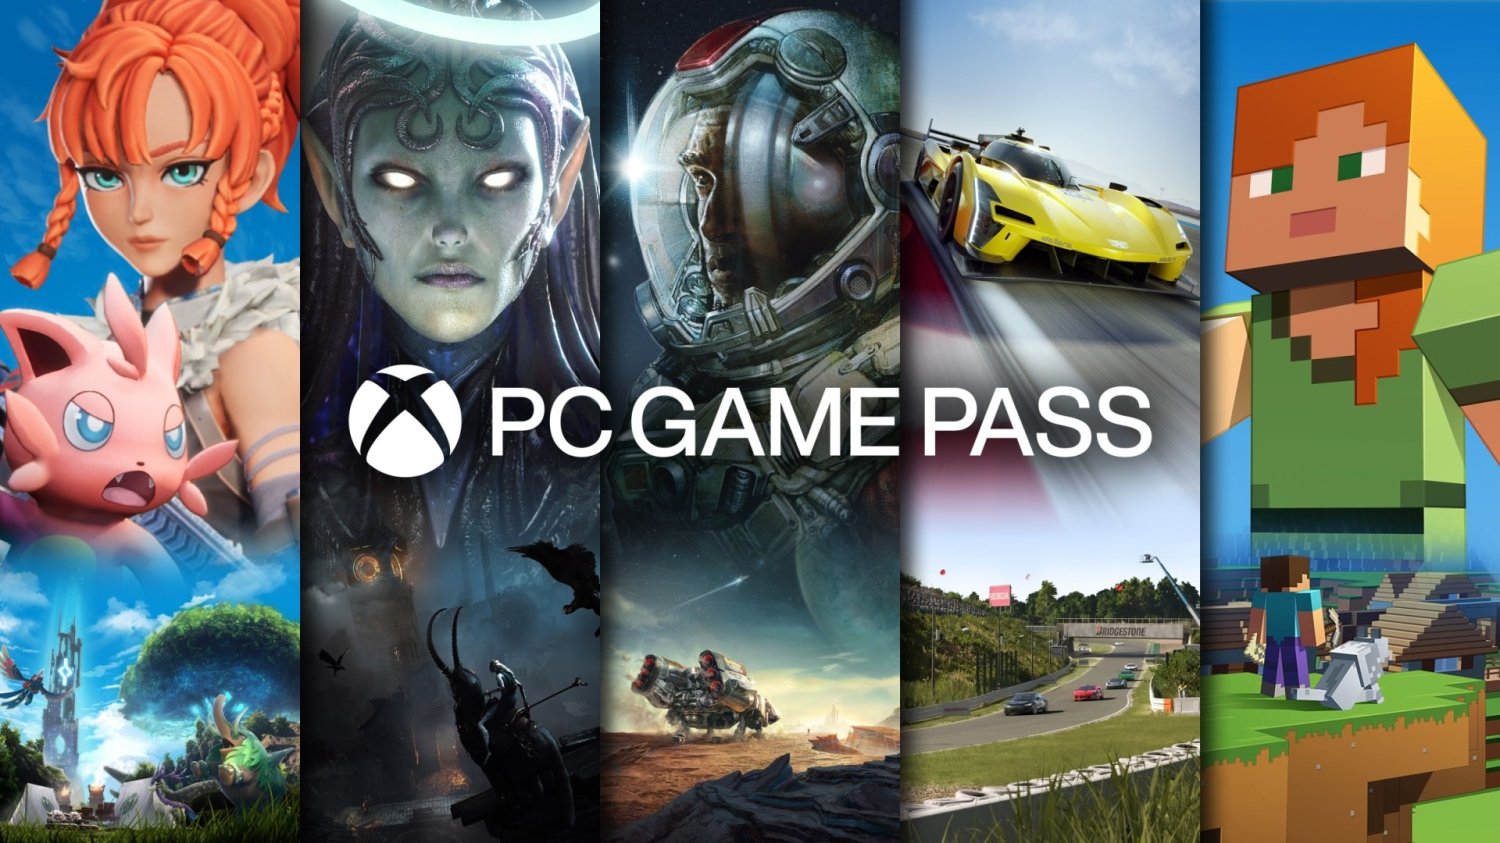 Владельцы GeForce смогут активировать 3-месячную подписку PC Game Pass начиная с 4 июня.